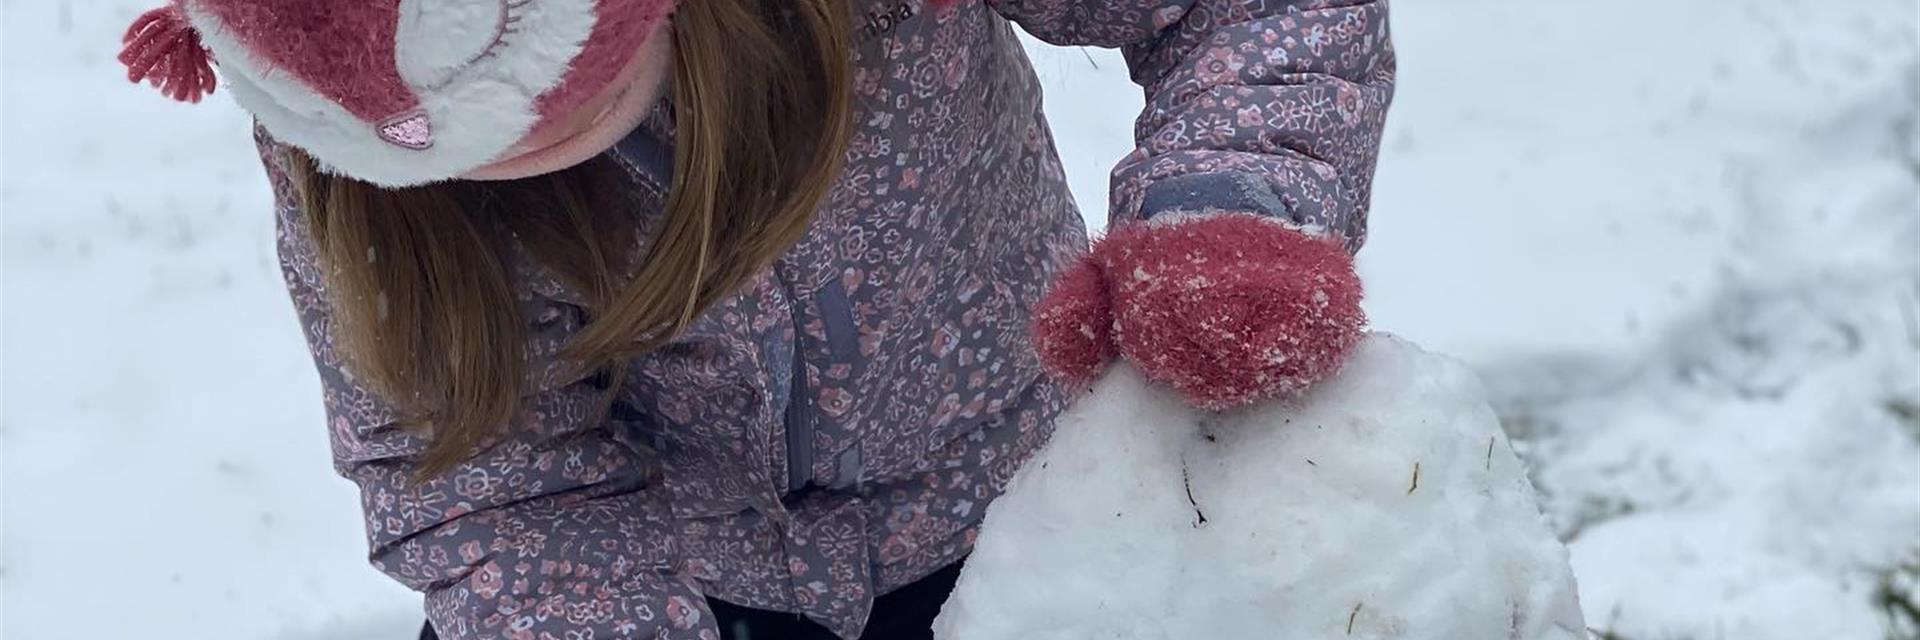 child building a snowman